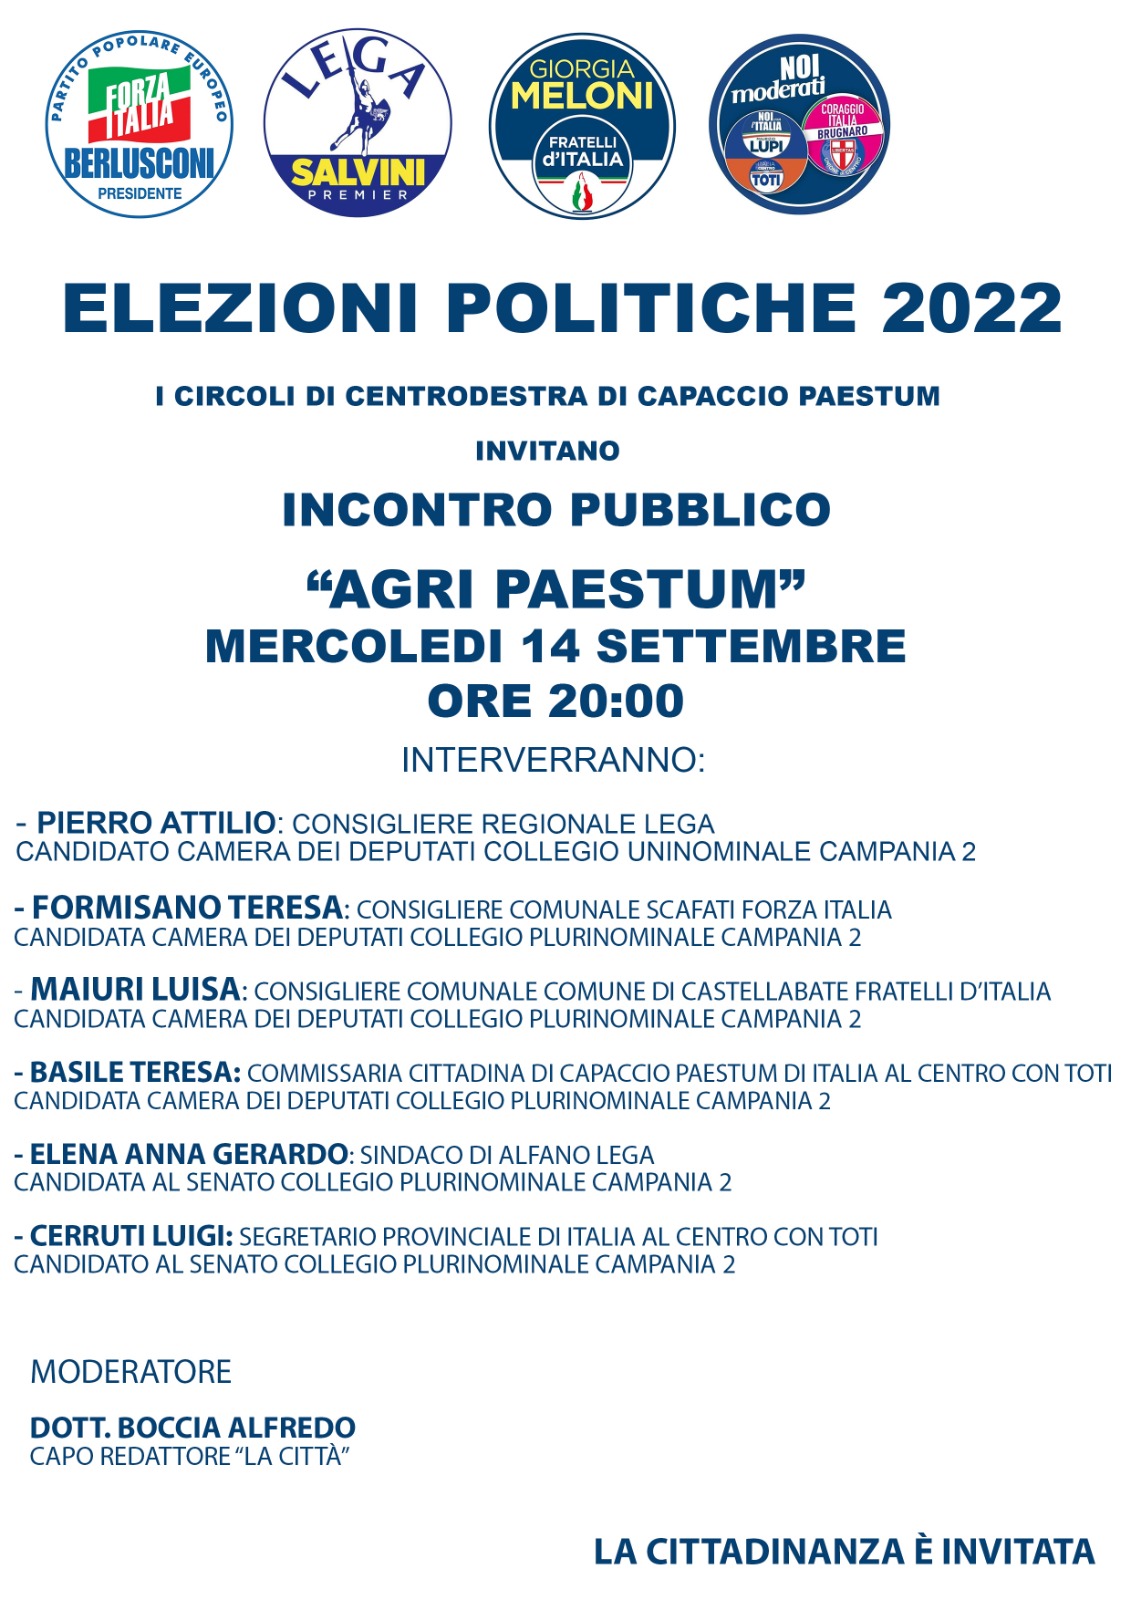 Paestum: Politiche, FI, incontro pubblico con candidati